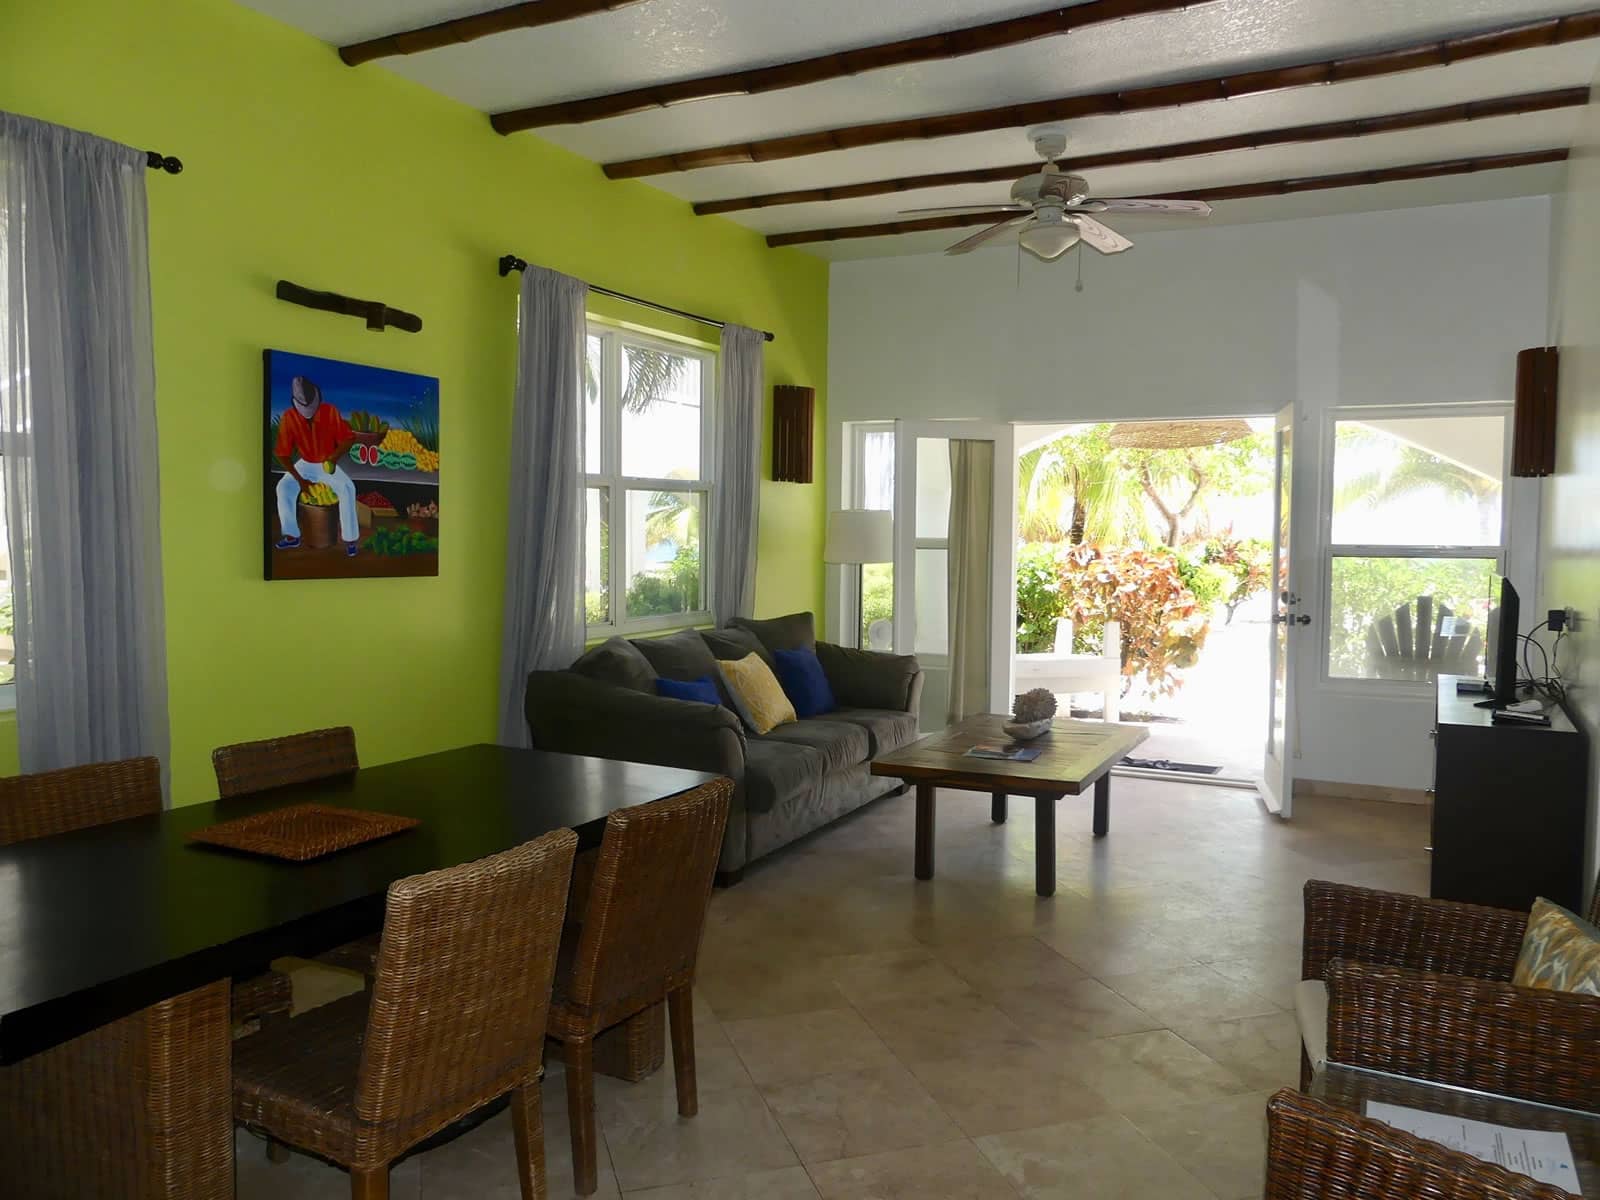 2 Bedroom Condo 303 for Sale, Umaya Resort, Placencia, Belize - 7th ...